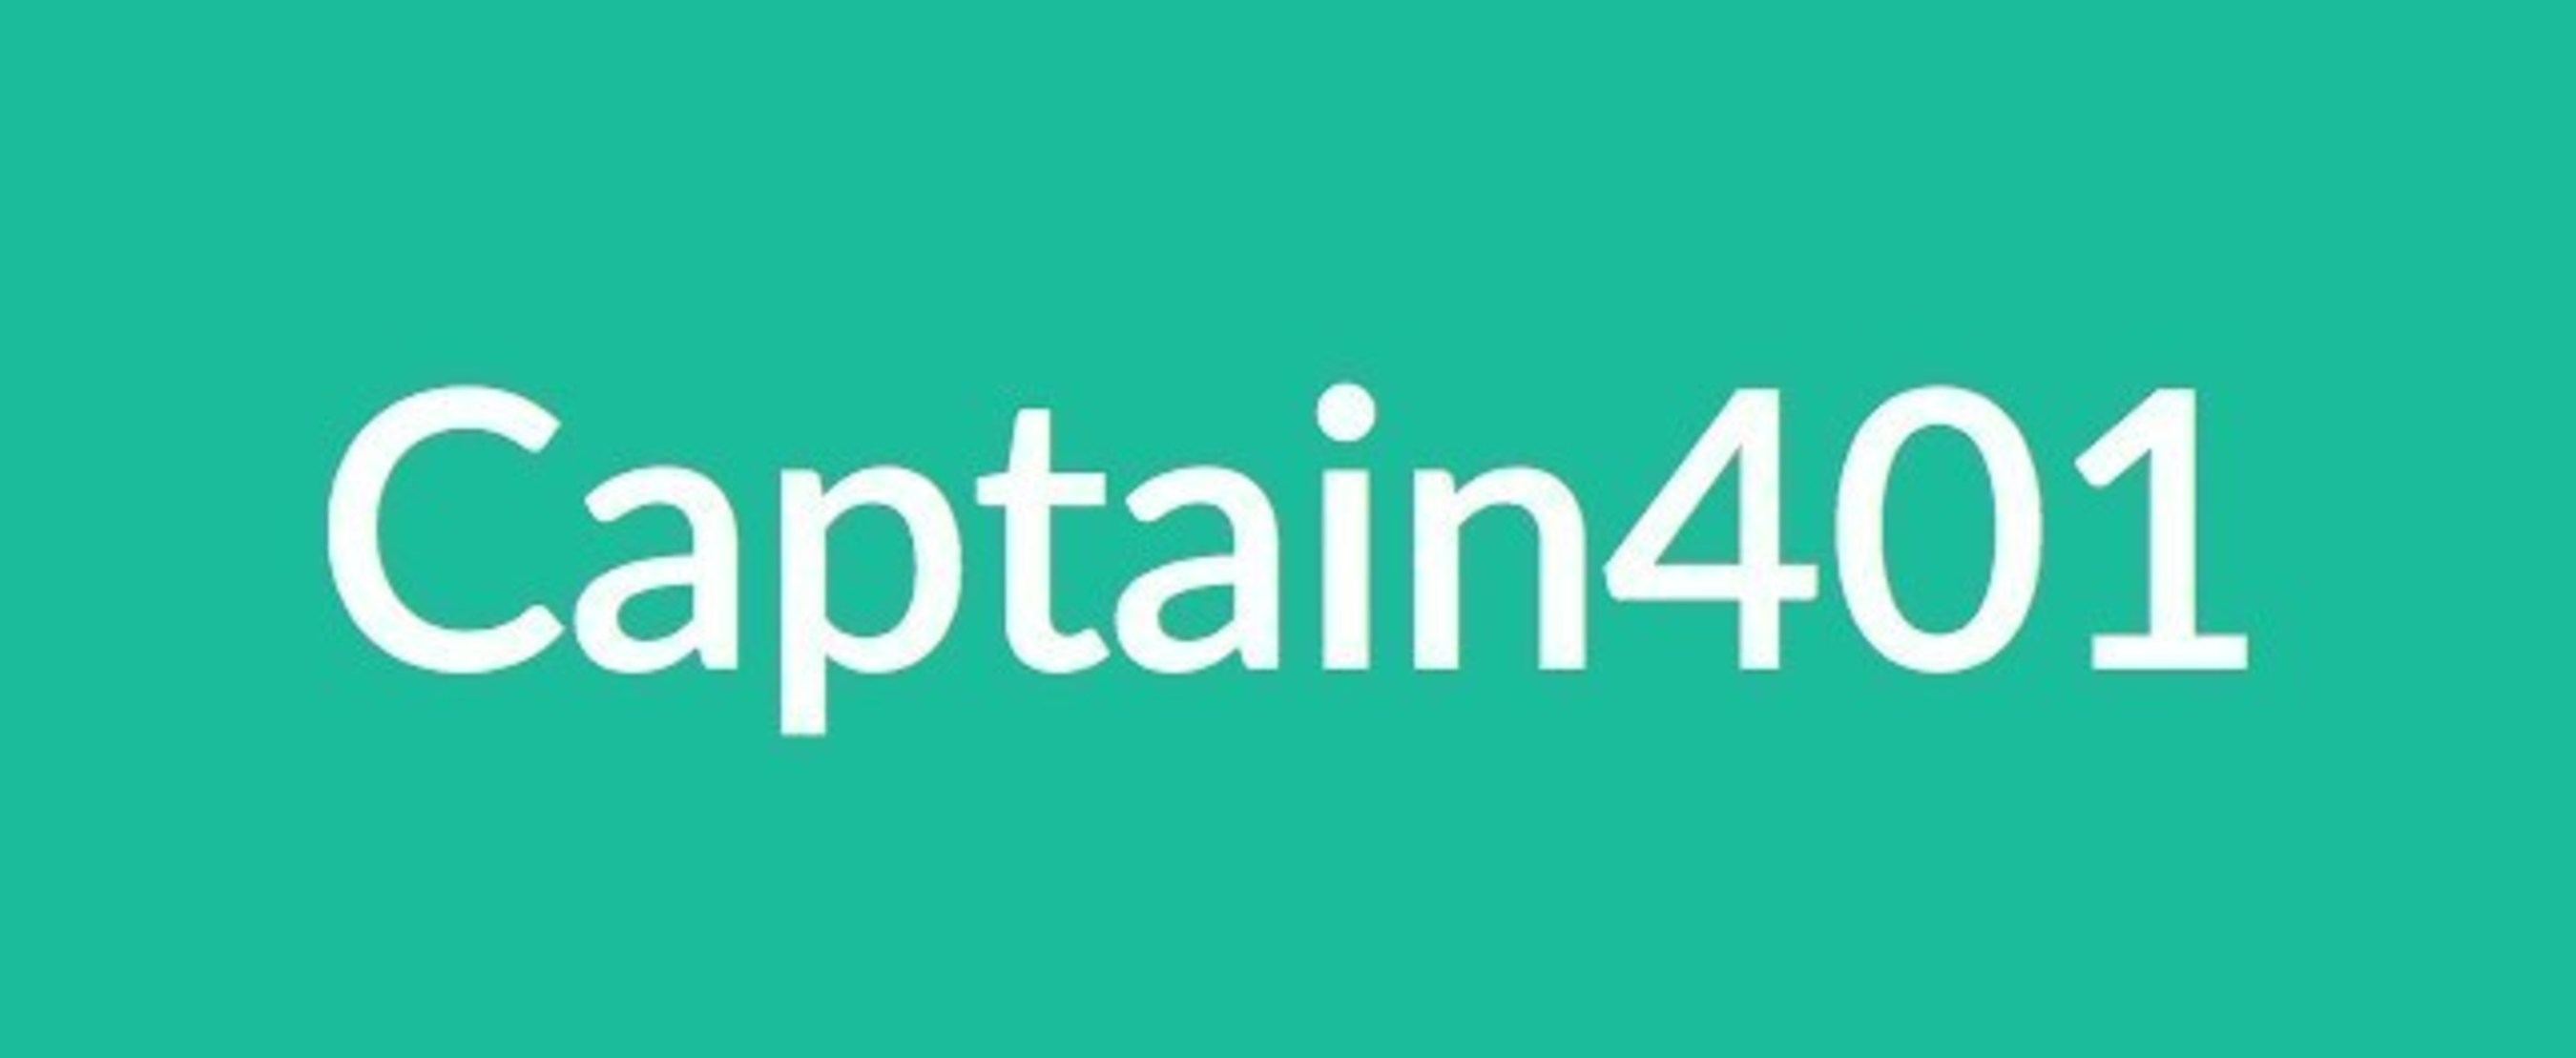 Captain401 logo